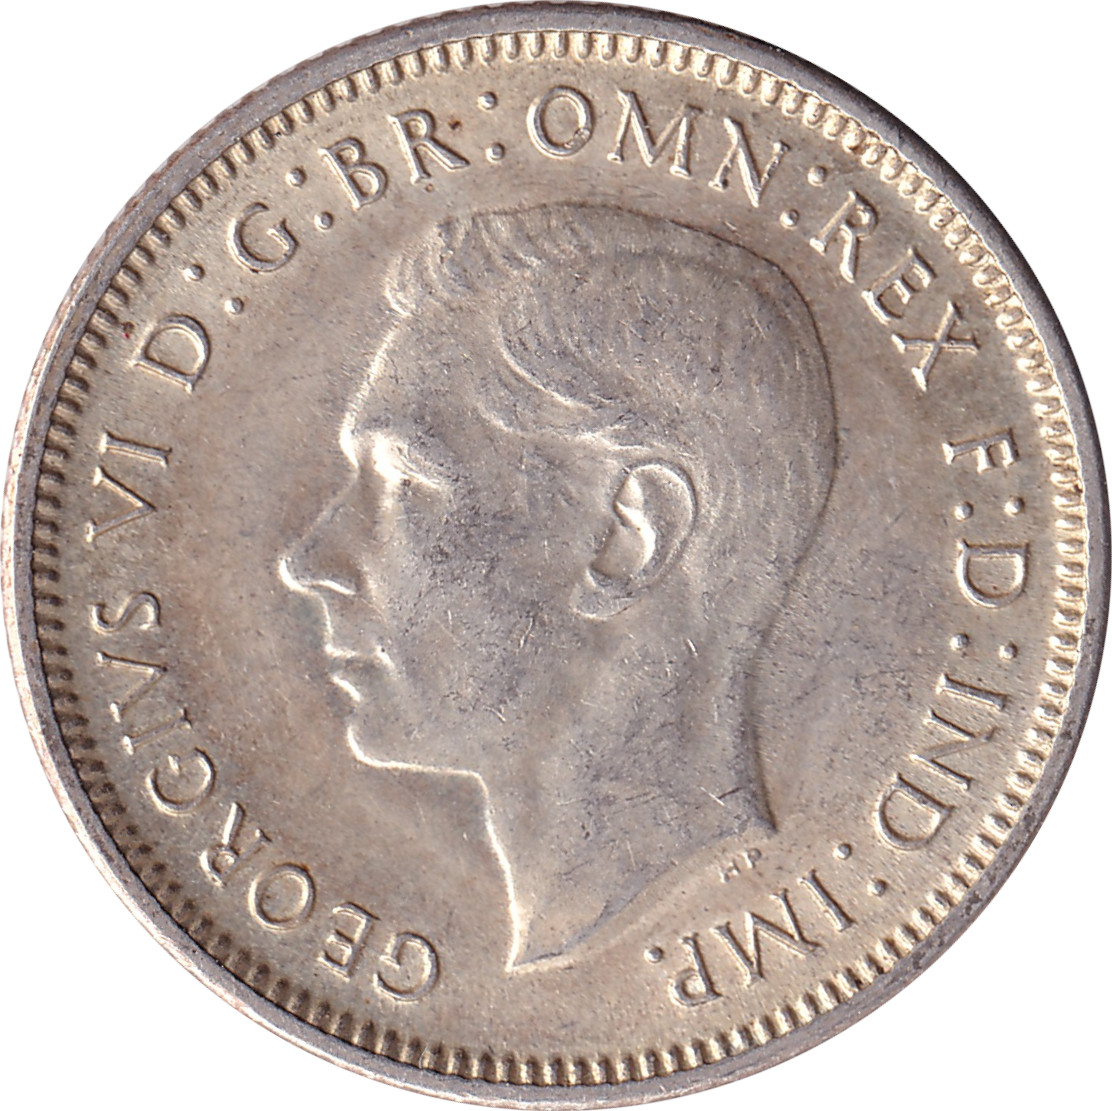 1 shilling - George VI